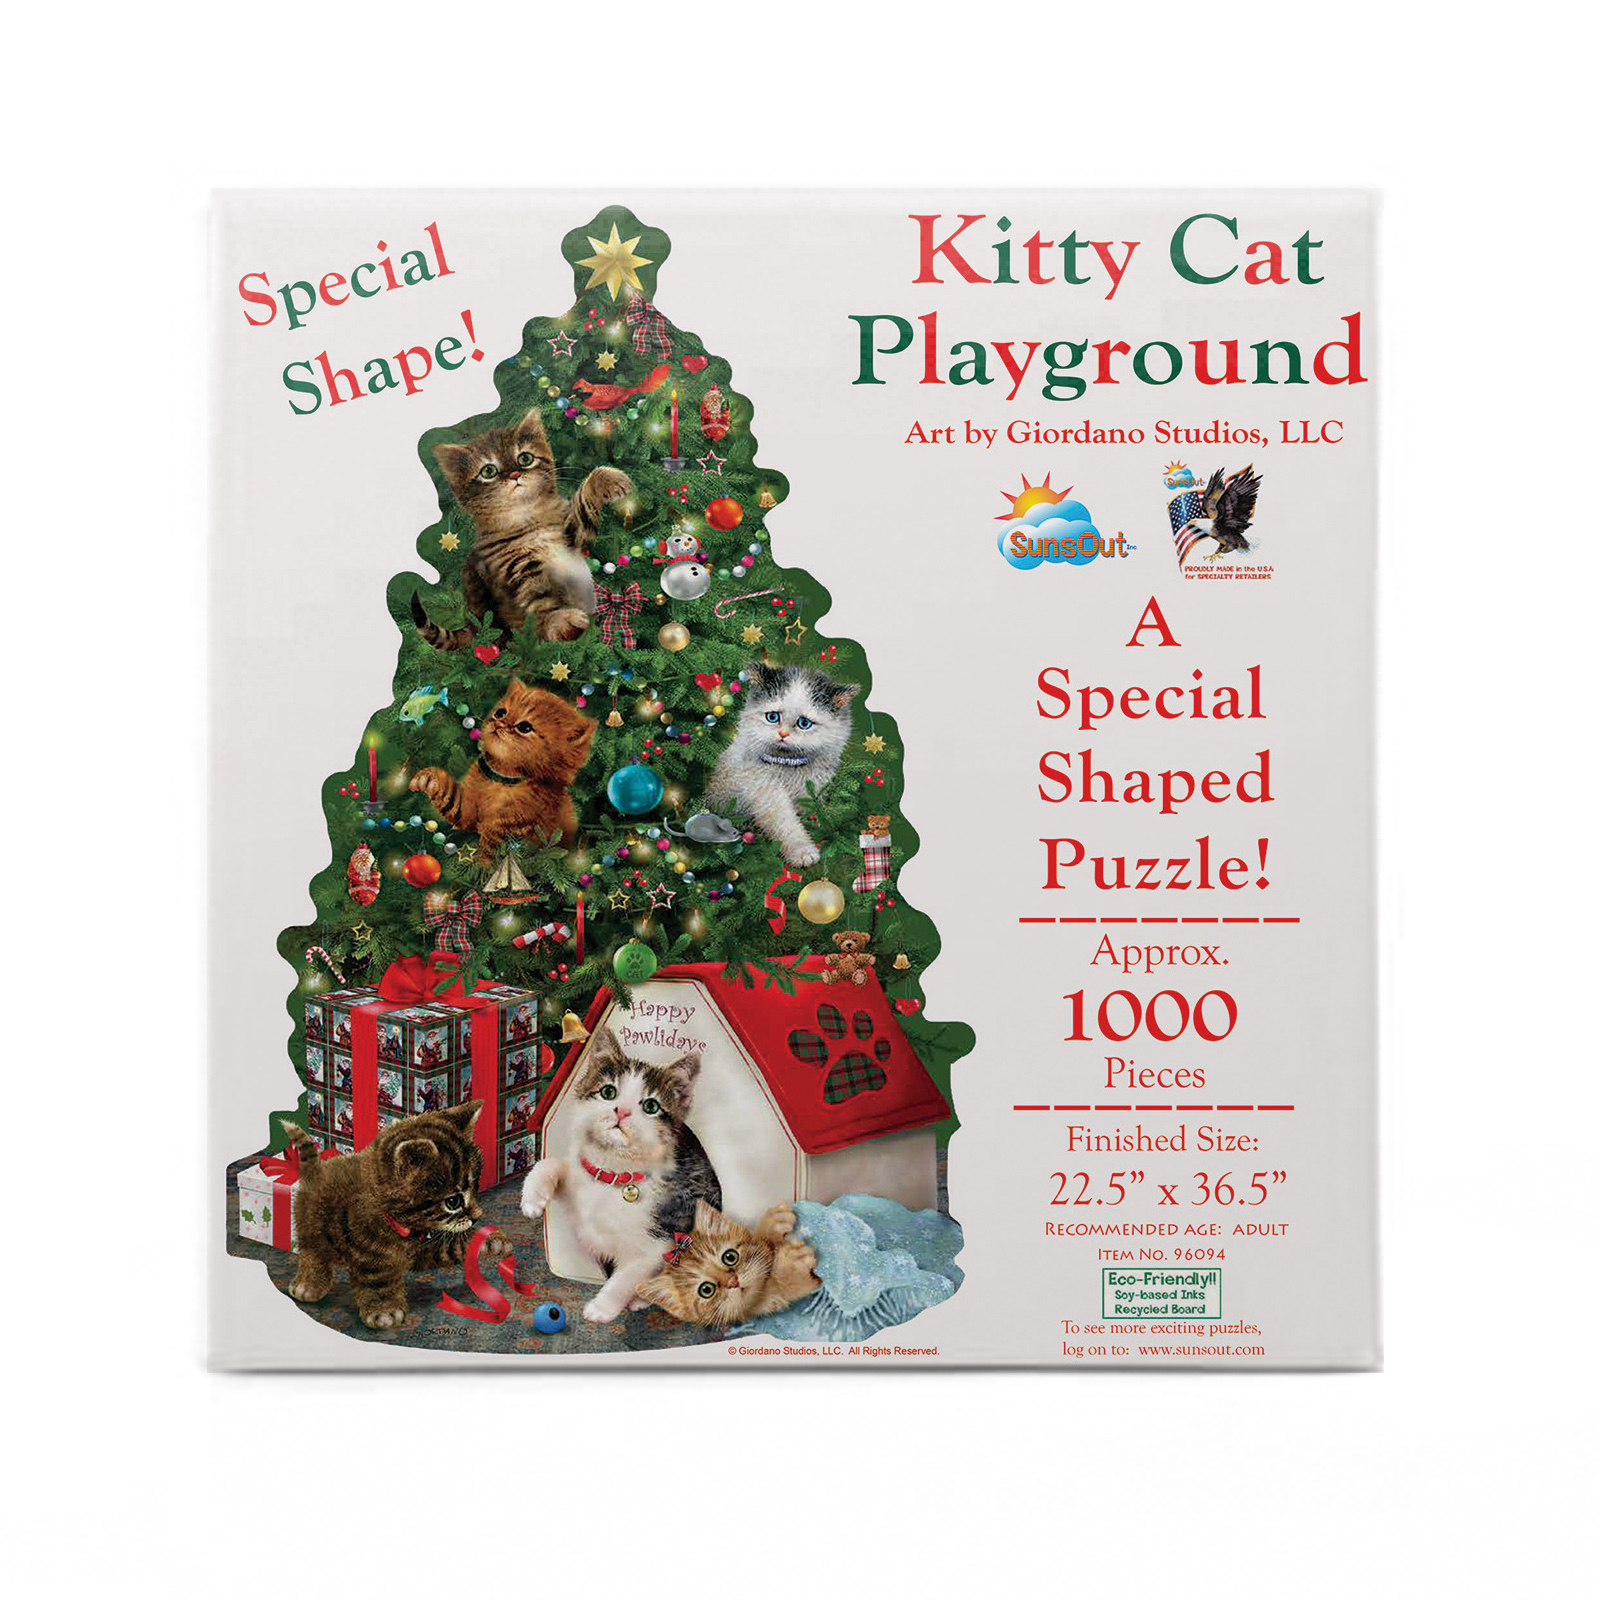 Kitty Cat Playground